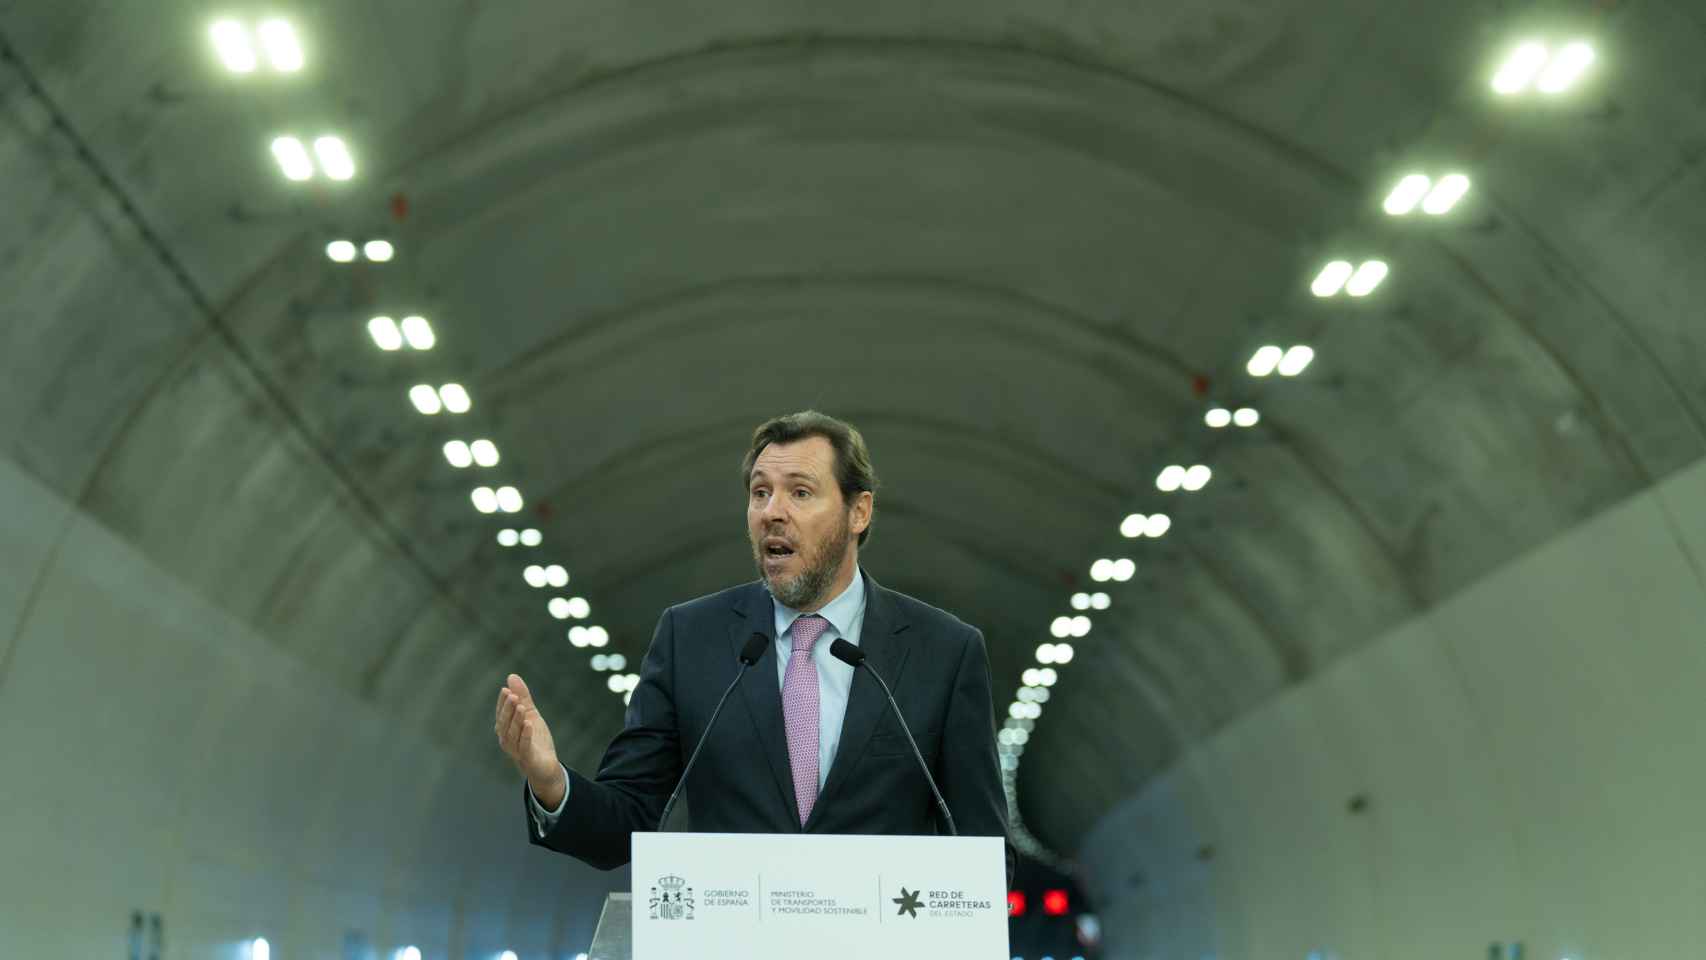 El Ministro de Transporte y Movilidad Sostenible, Óscar Puente, inaugura el nuevo tramo de la B-40 entre Olesa de Montserrat y Viladecavalls